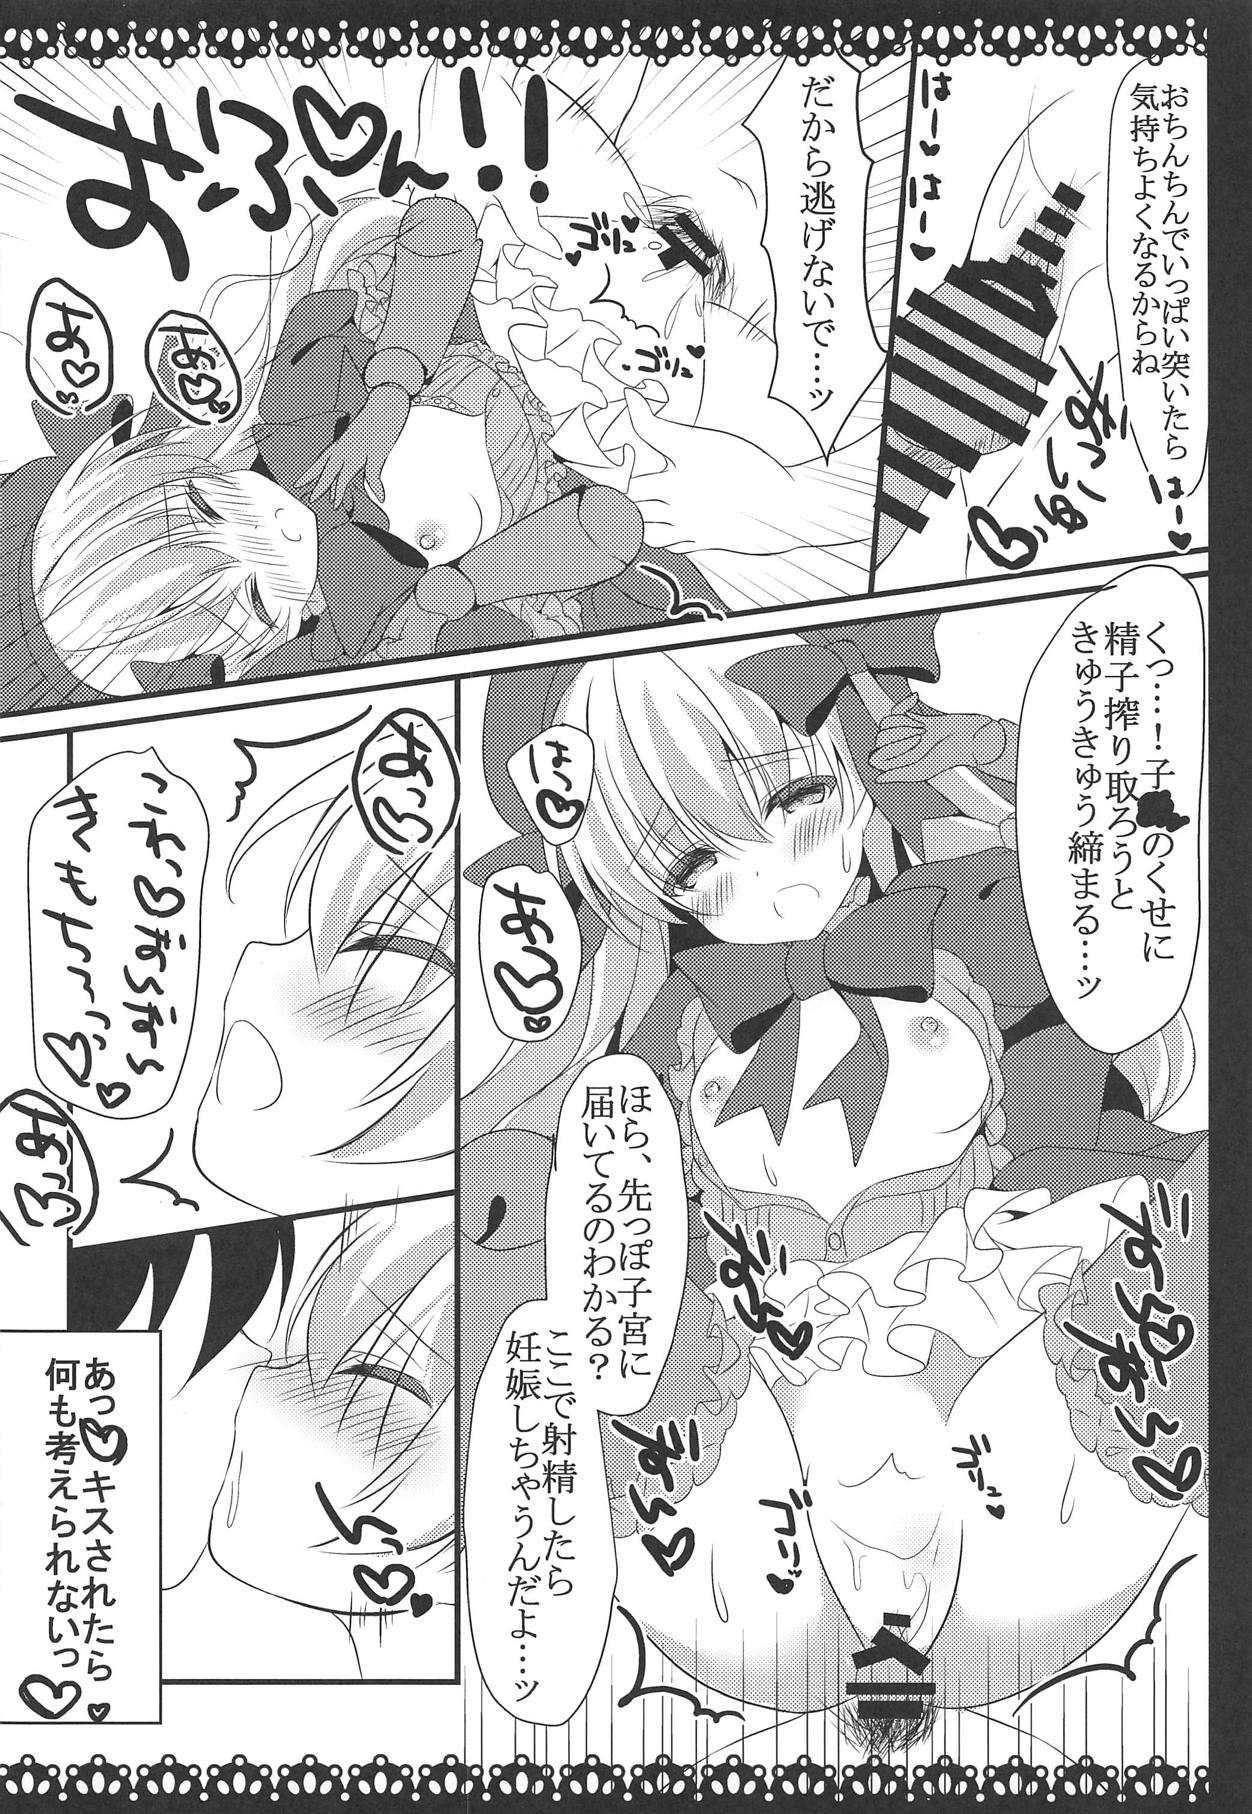 Cumfacial Anata no Tame no Monogatari - Fate grand order Camwhore - Page 11